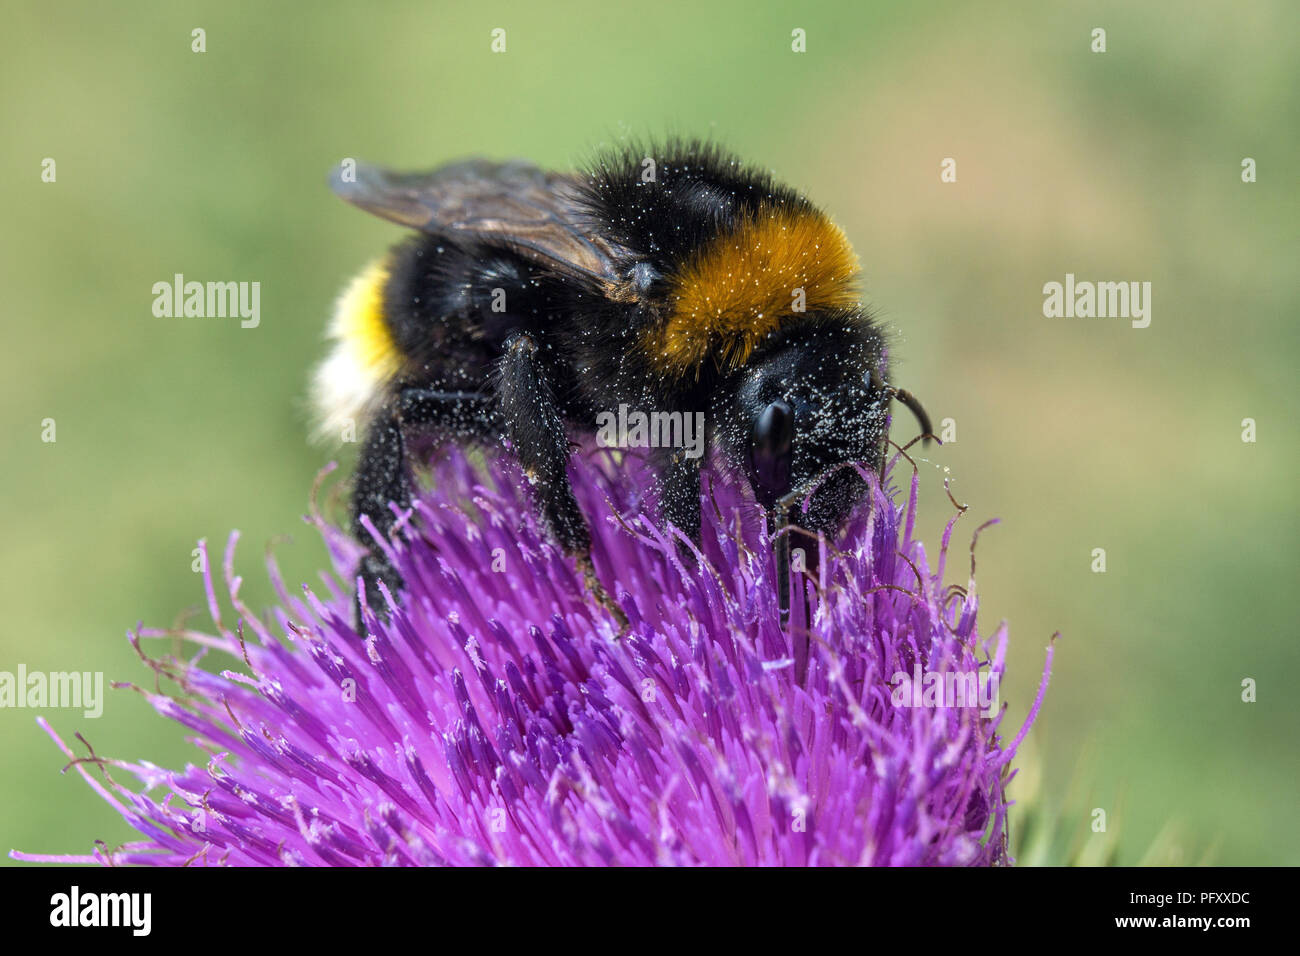 De abejorros (Bombus) se asienta en el cardo en flor (Carduus), Dossenheim, Baden-Württemberg, Alemania Foto de stock